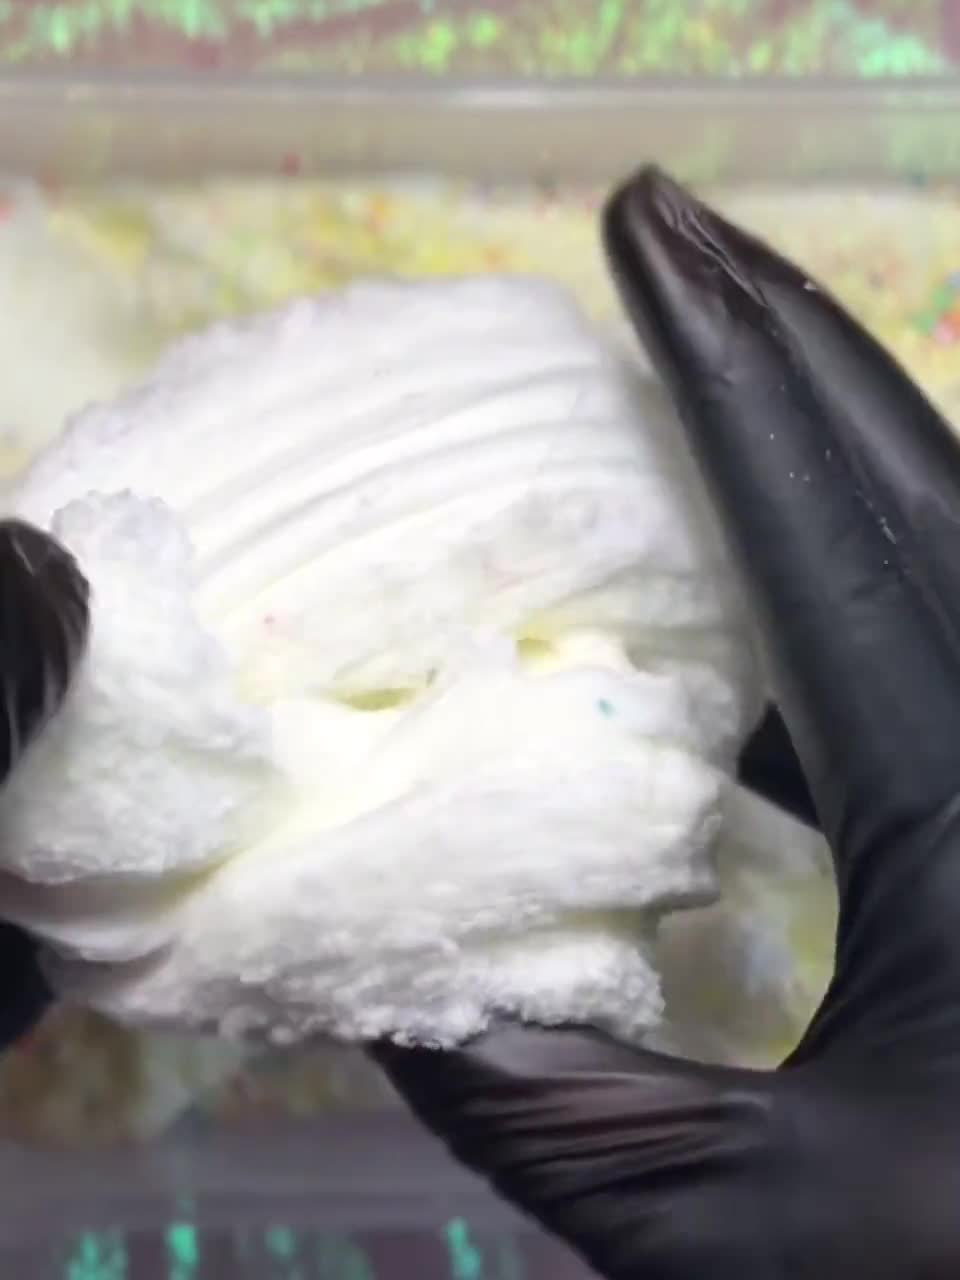 6-PACK SLIME TEXTURES SAMPLER SET 15oz Cheap Butter Bingsu Snow Cloud Jelly  Foam